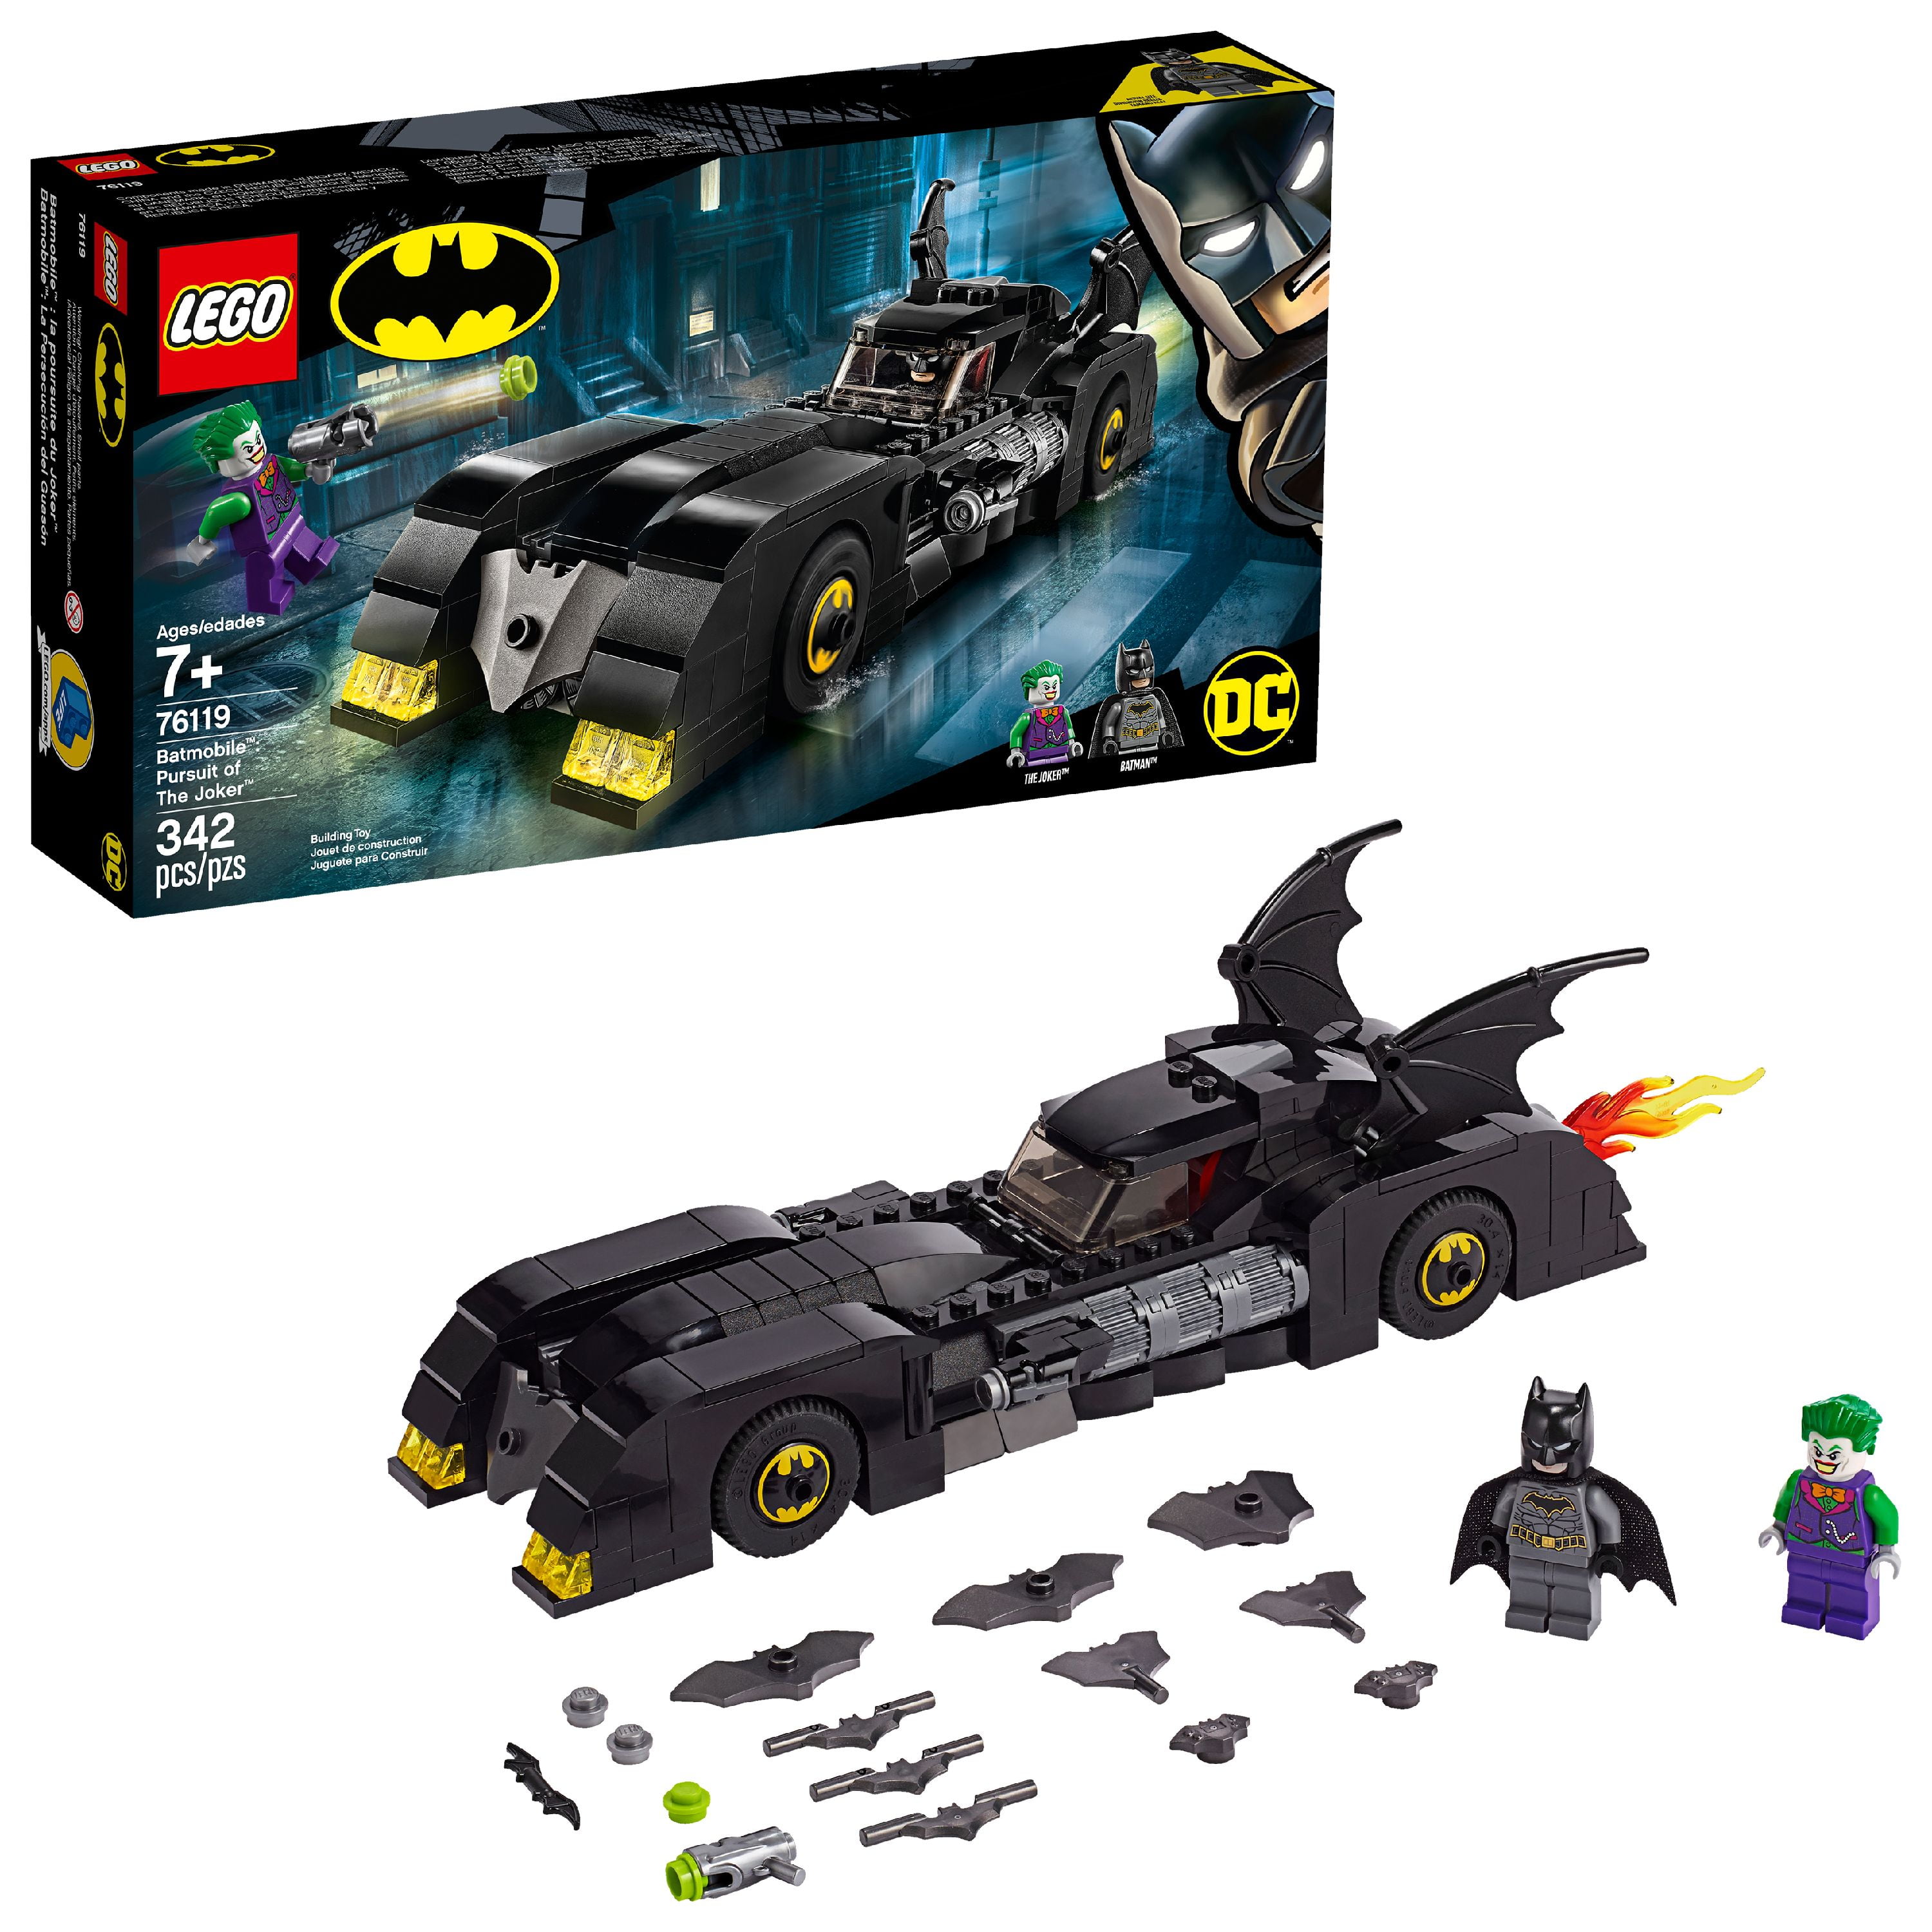 Overskyet Spændende Seaboard LEGO DC Comics Batmobile: Pursuit of The Joker 76119 Superhero Building Set  - Walmart.com